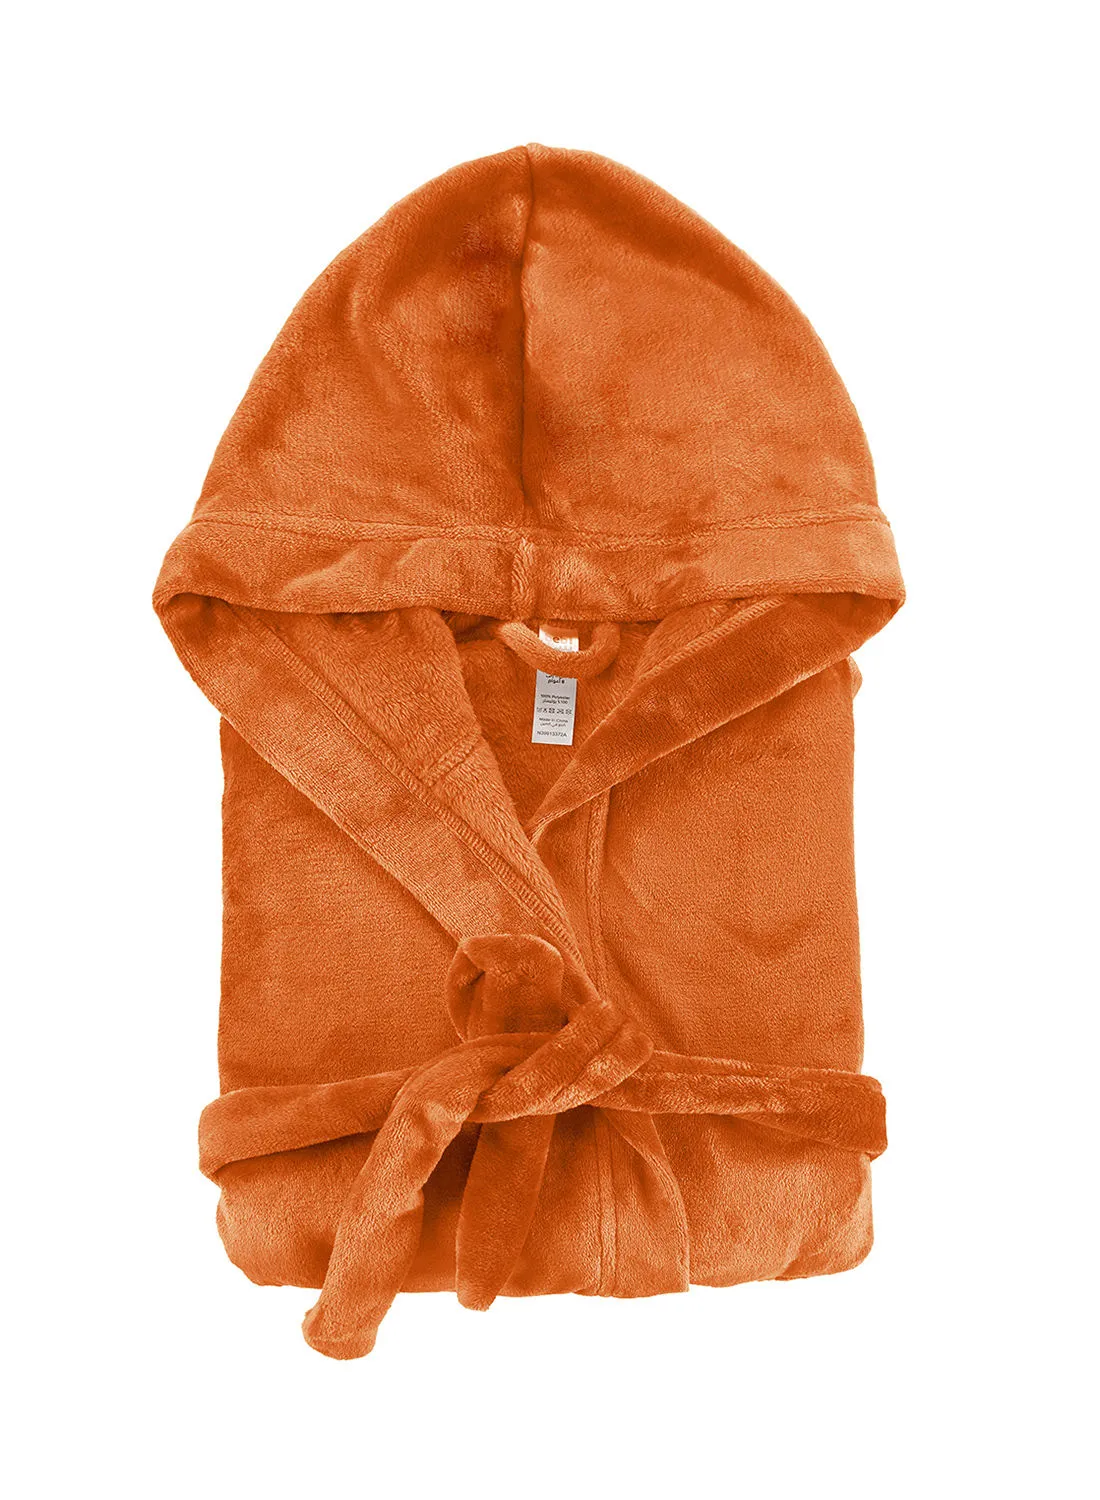 Bebi Bebi Kids Bathroom Towel Set - 255 GSM 100% Cotton - Orange Color - Lightweight - Kids Hooded Comfortable - For Girls & Boys - 1 Piece